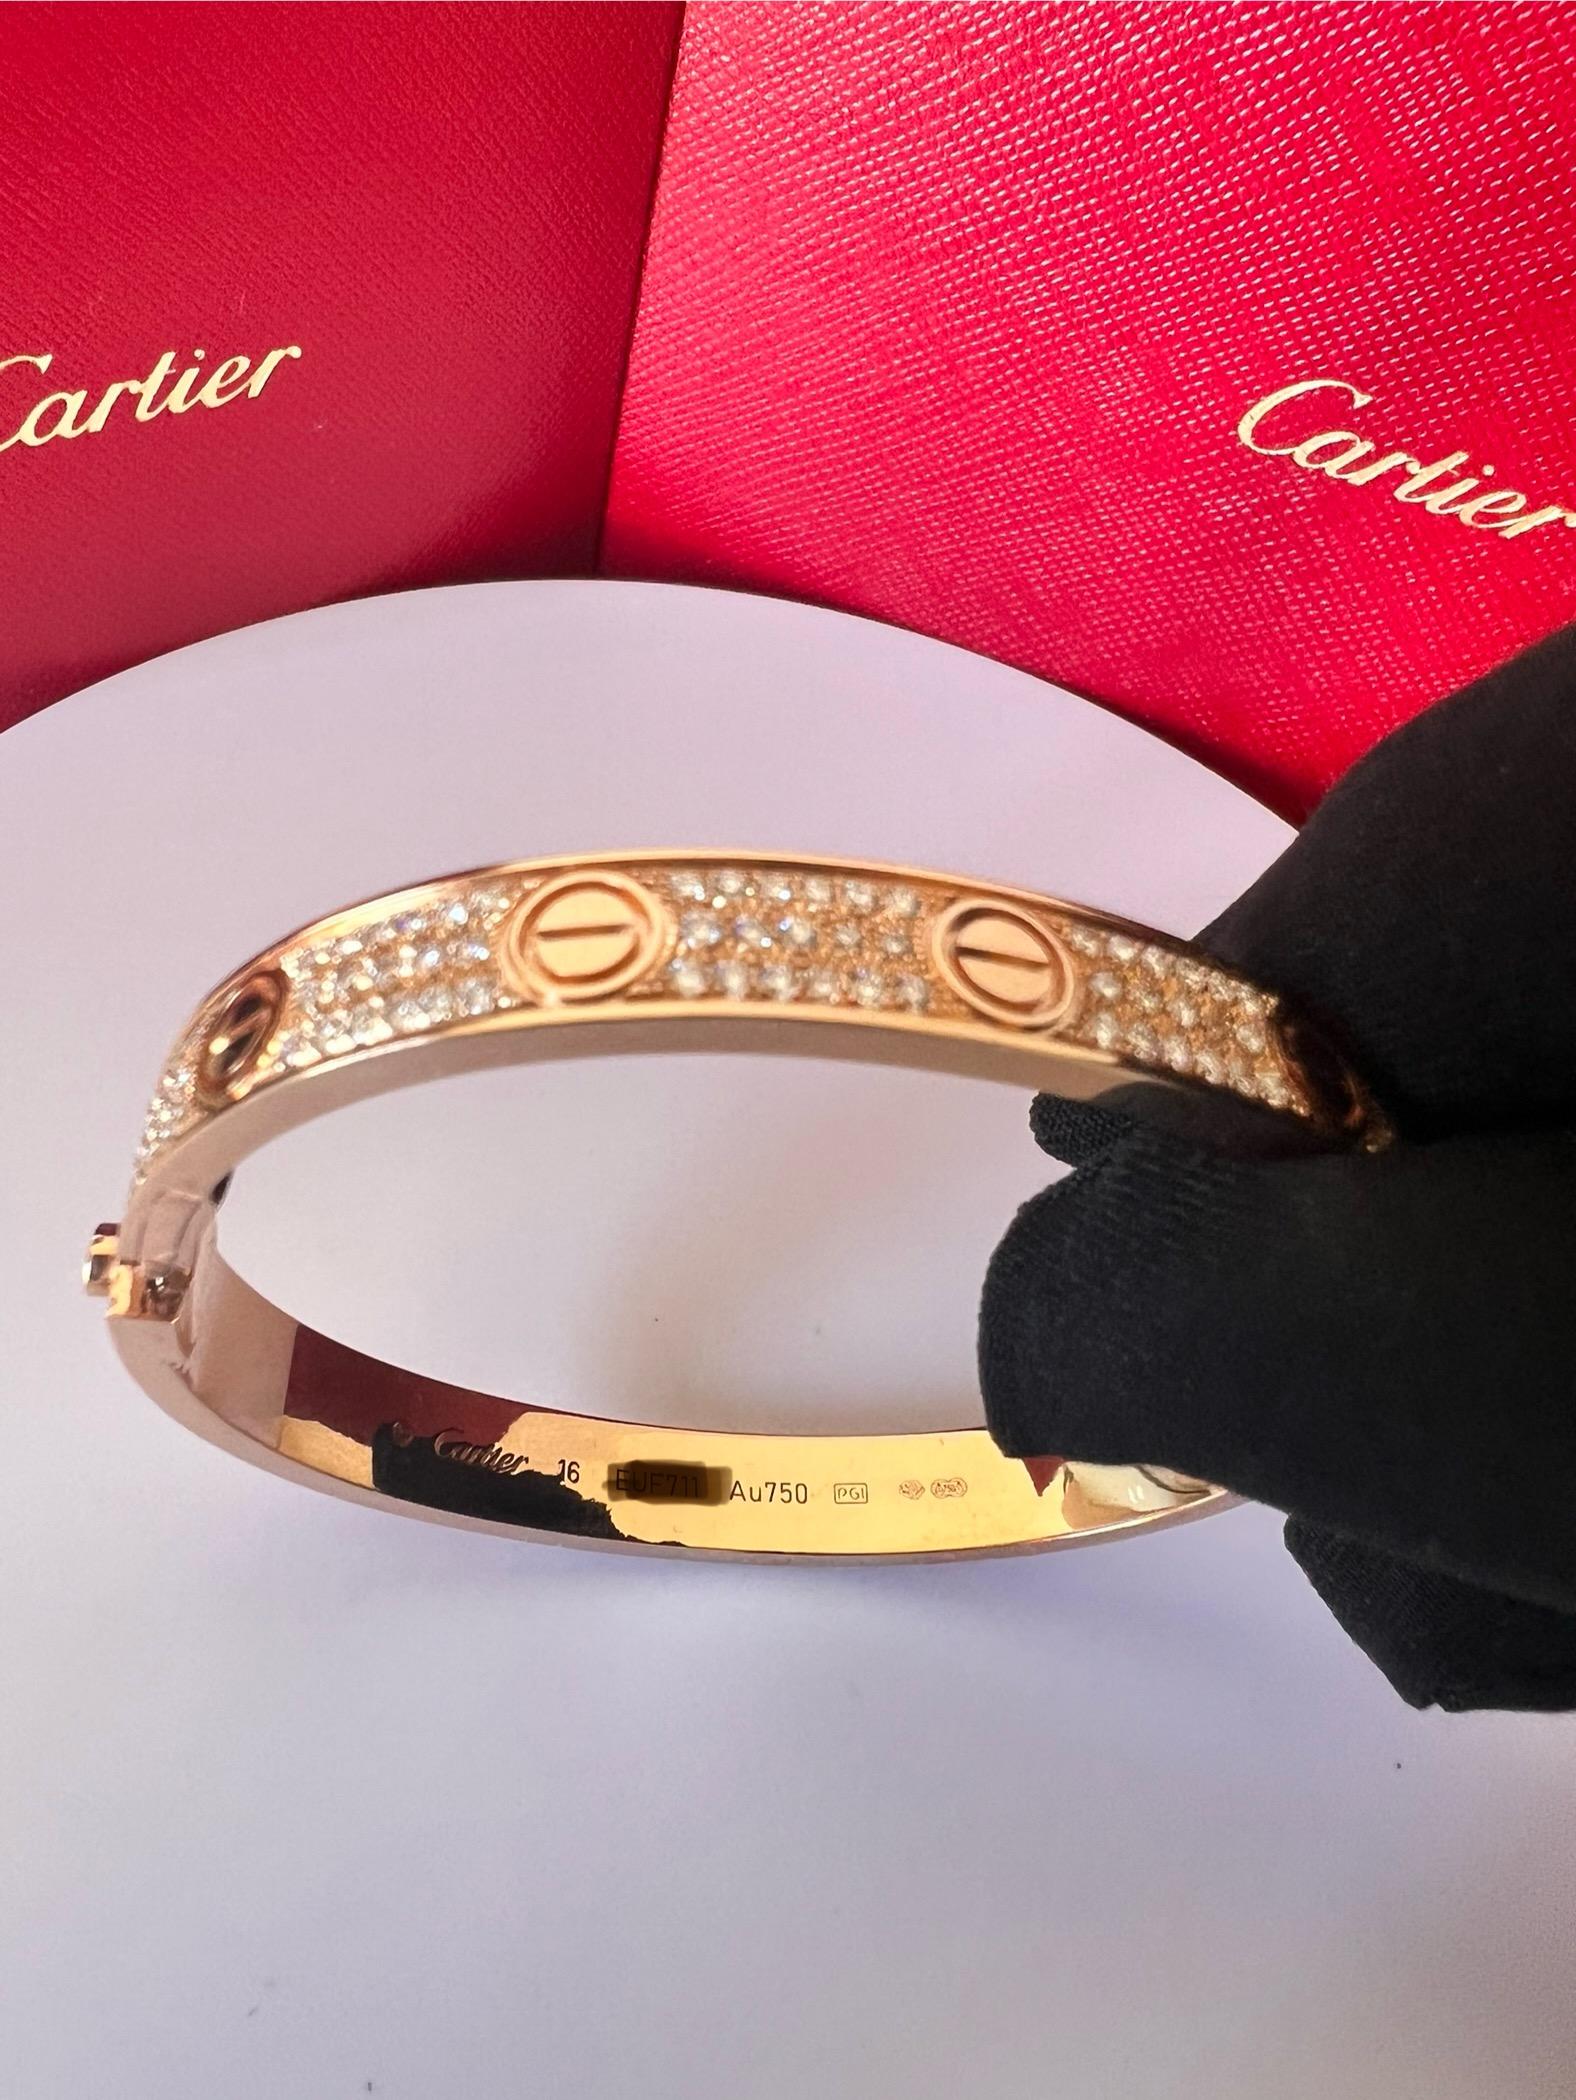 BRACELET D'AMOUR DE CARTIER
Bracelet 'Love' de Cartier en or rose 18 carats avec vis en or et diamants ronds de taille brillant sertis (couleur D-F, pureté VVS).
Signé Cartier,  750, avec numéro de série et poinçons 
Le bracelet est présenté avec un